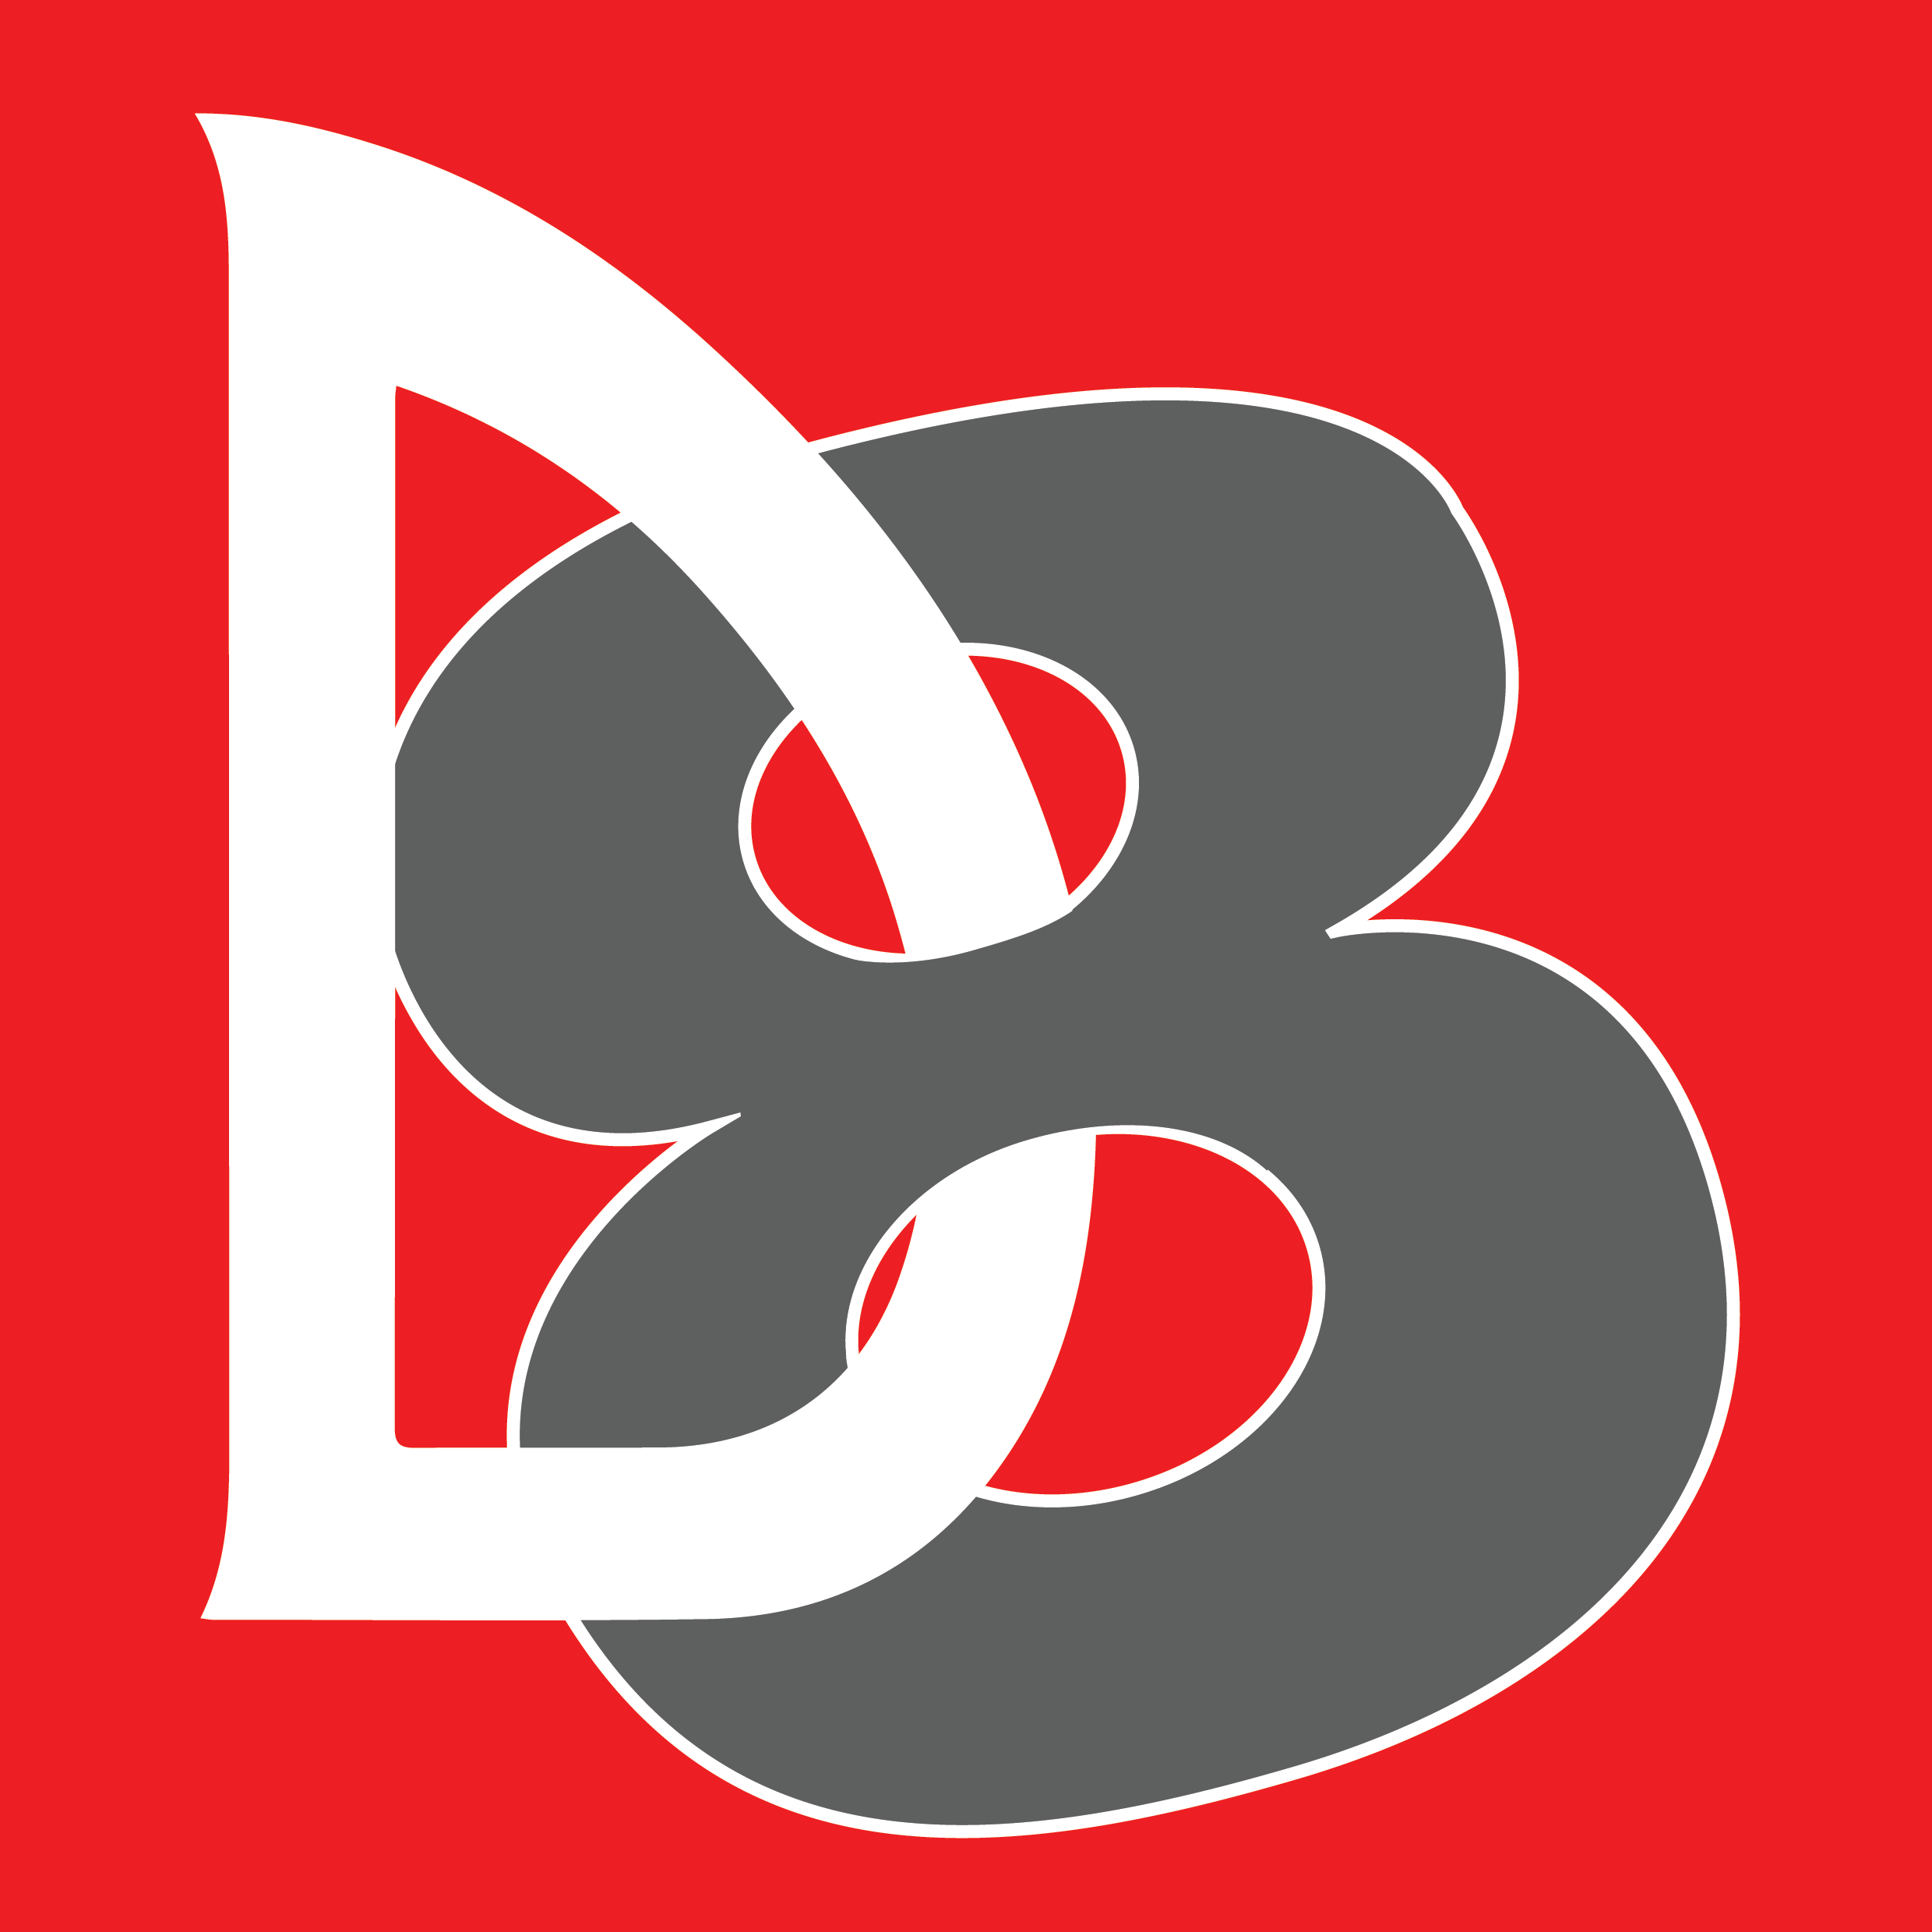 D8 logo